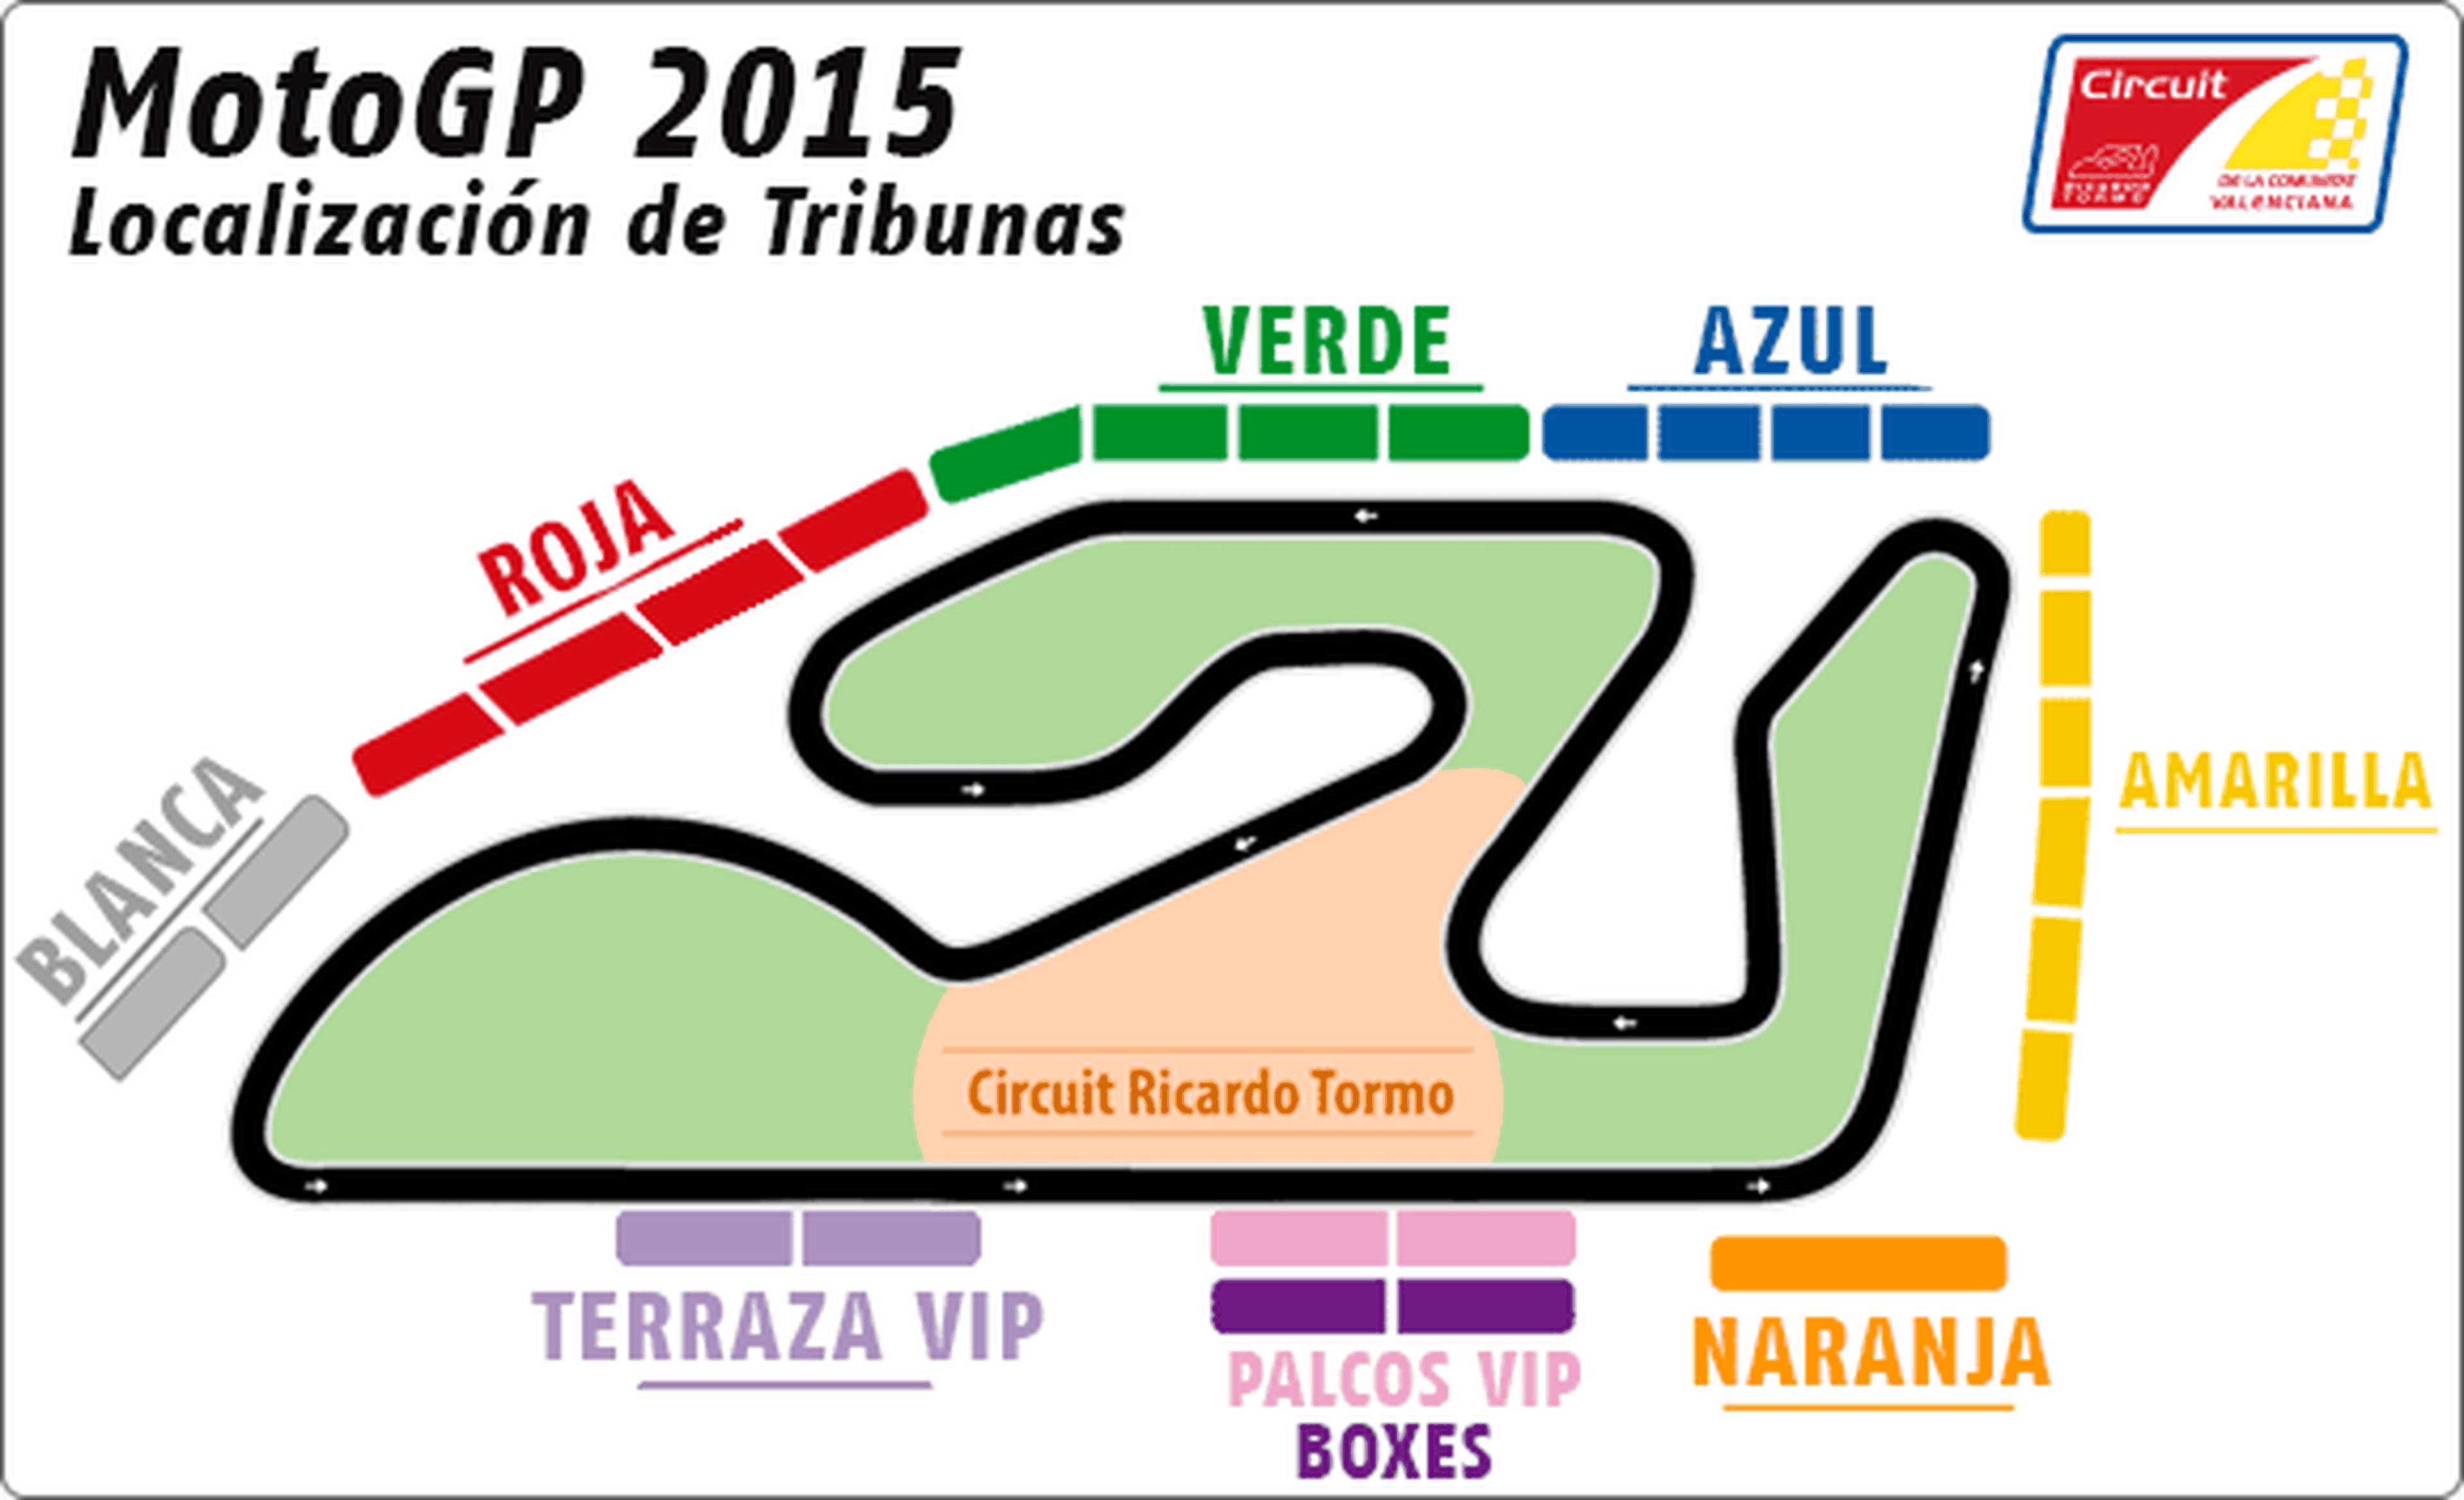 ¿Quieres ir al GP Valencia 2015? ¿Cómo comprar entradas?